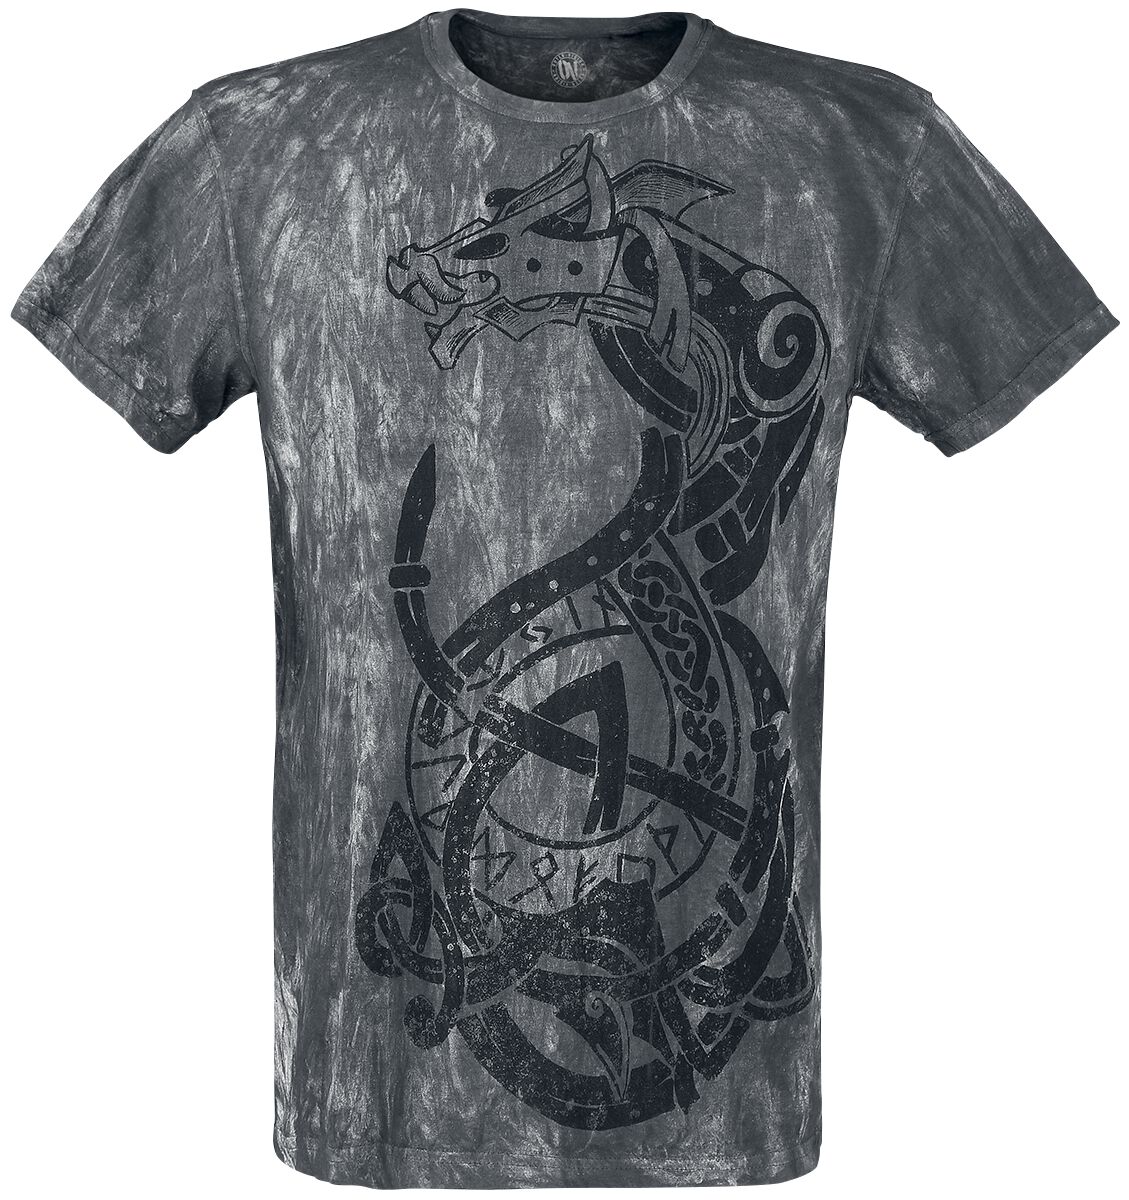 Outer Vision - Gothic T-Shirt - Viking Warrior - S bis 4XL - für Männer - Größe 4XL - grau